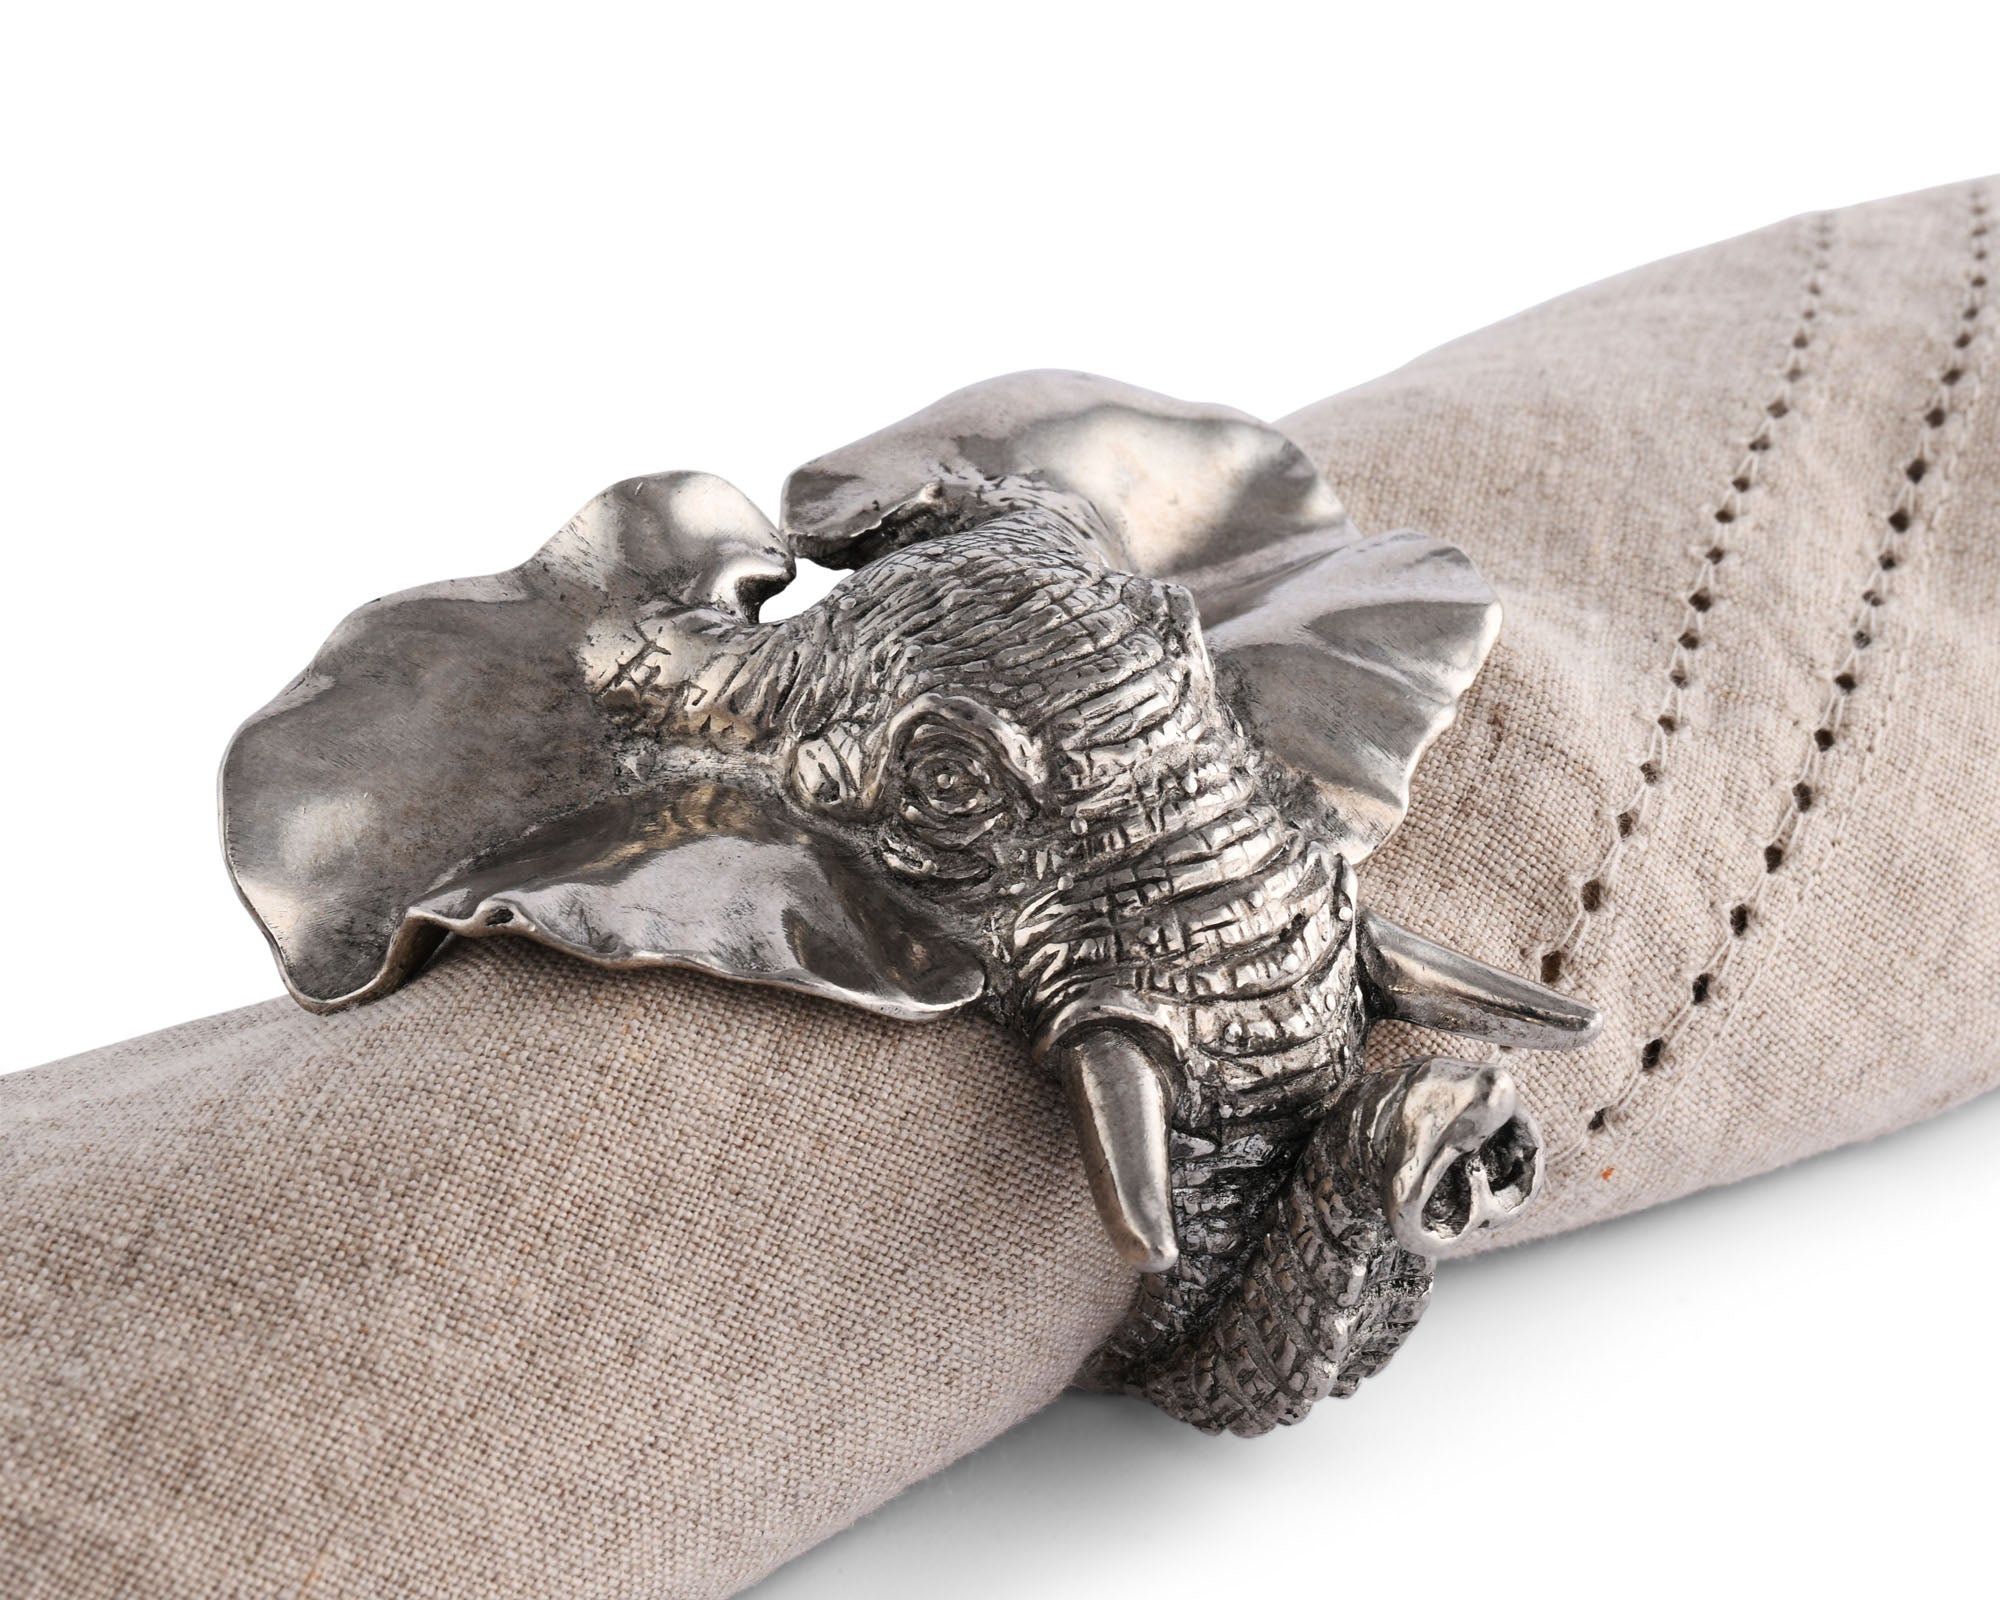 Vagabond House Elephant Napkin Ring Product Image